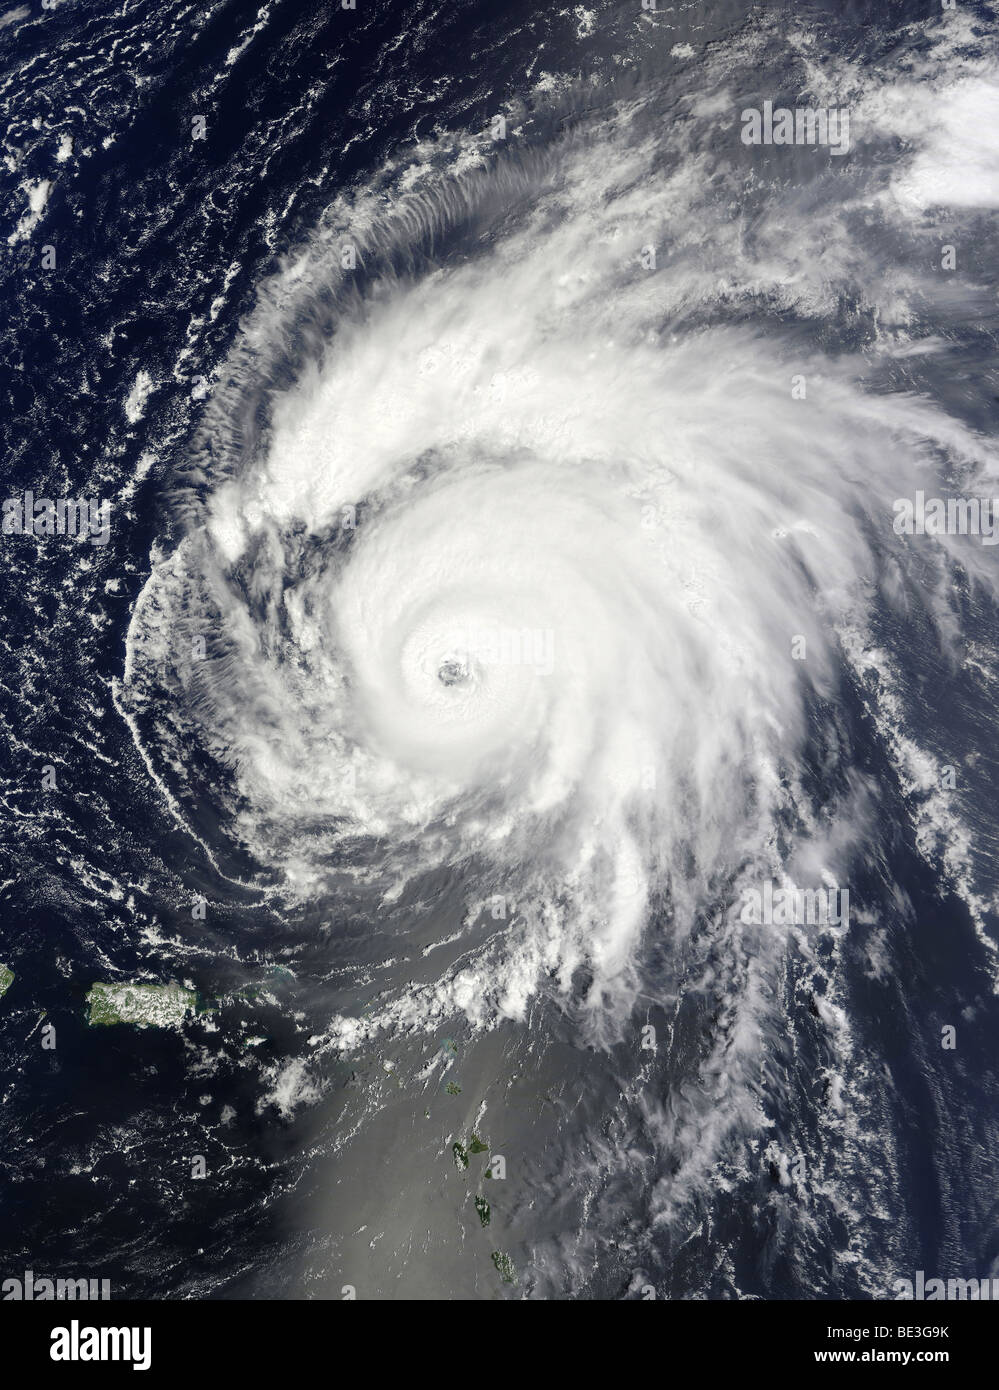 20. August 2009 - Hurrikan Bill nordöstlich von Puerto Rico und nördlich von der kleinen Antillen, atlantische Ozean. Stockfoto